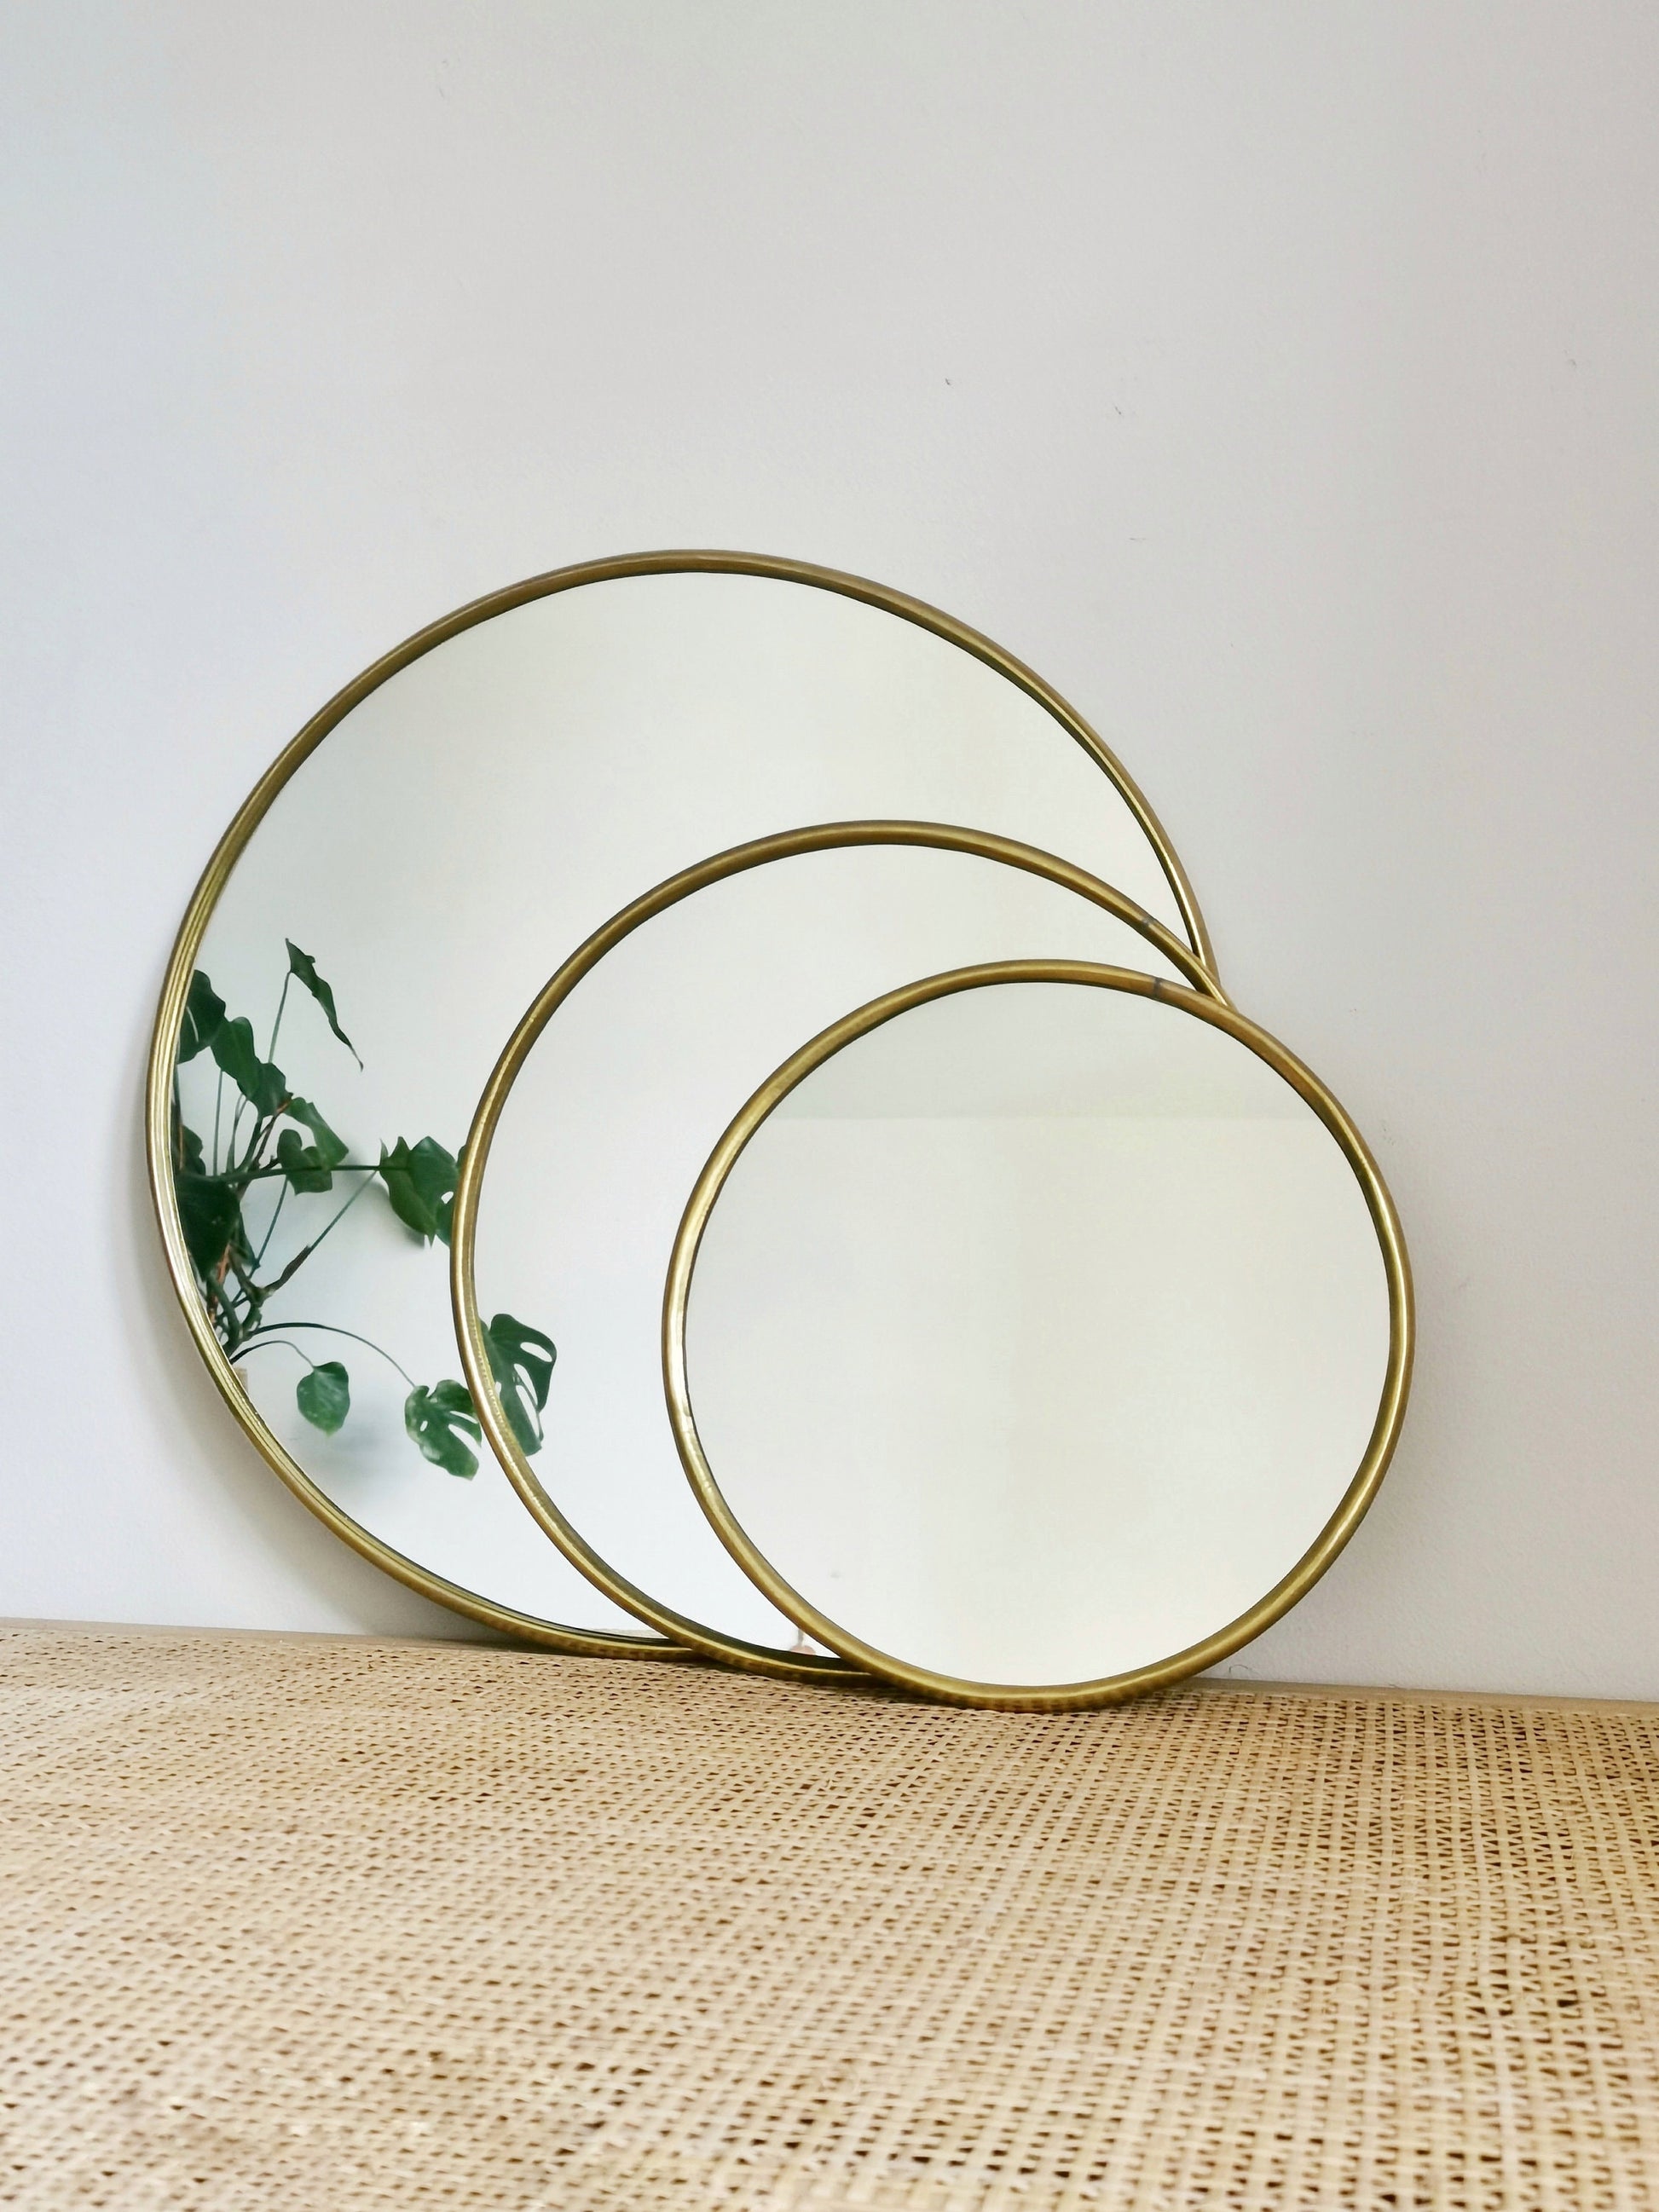 Runder Spiegel, Spiegel mit – CocosyBerlin goldenem Wandspiegel Rund, Messing Rahmen